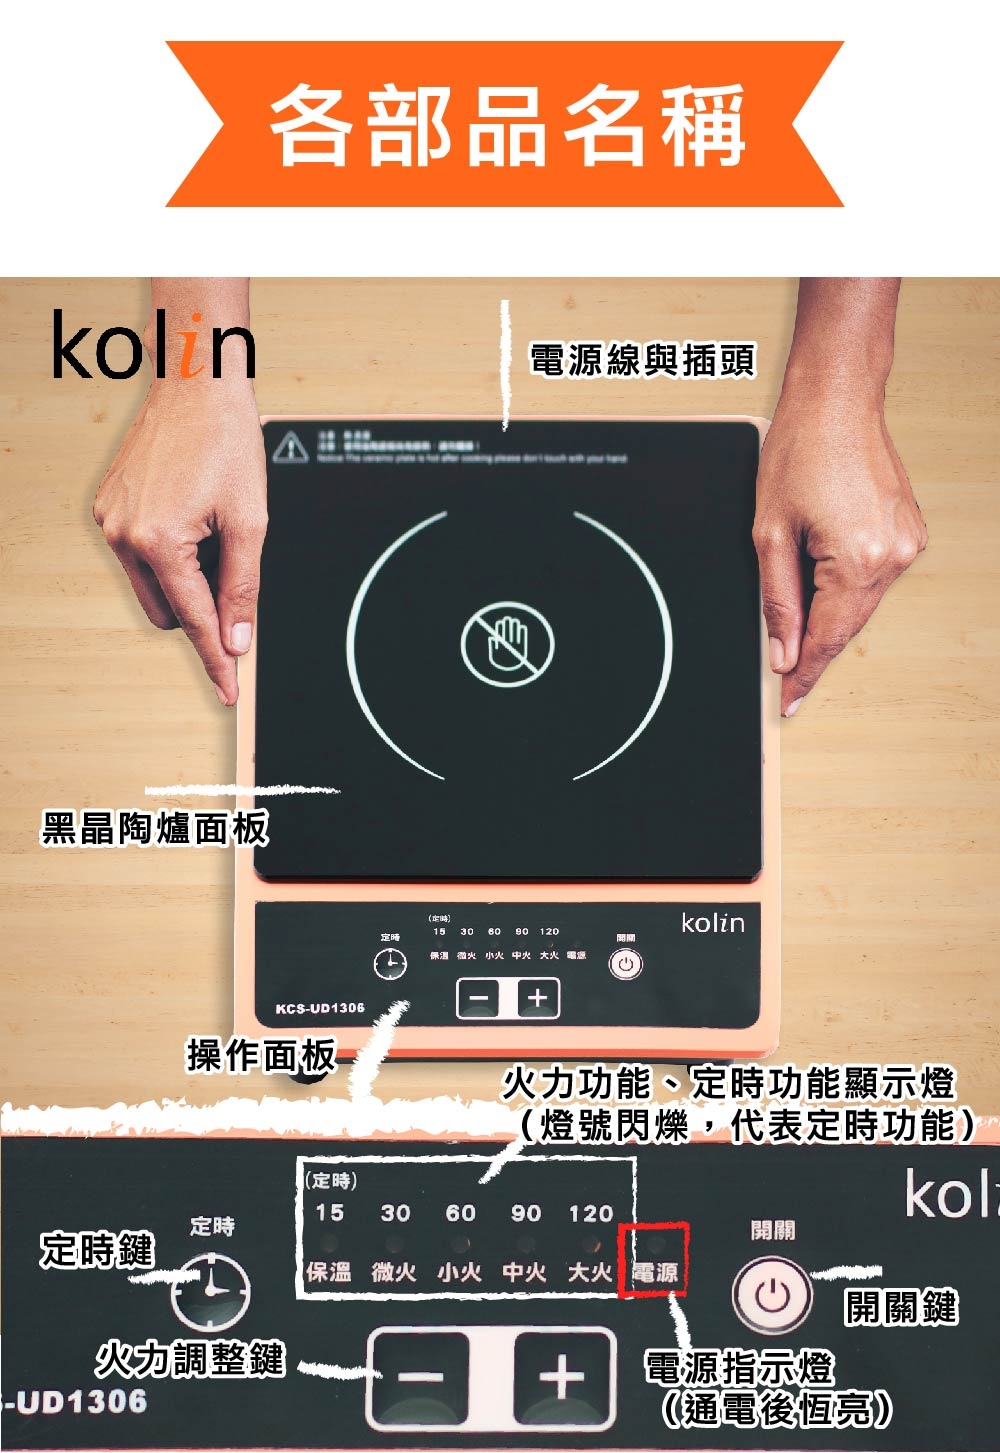 歌林 Kolin-不挑鍋電陶爐KCS-UD1306